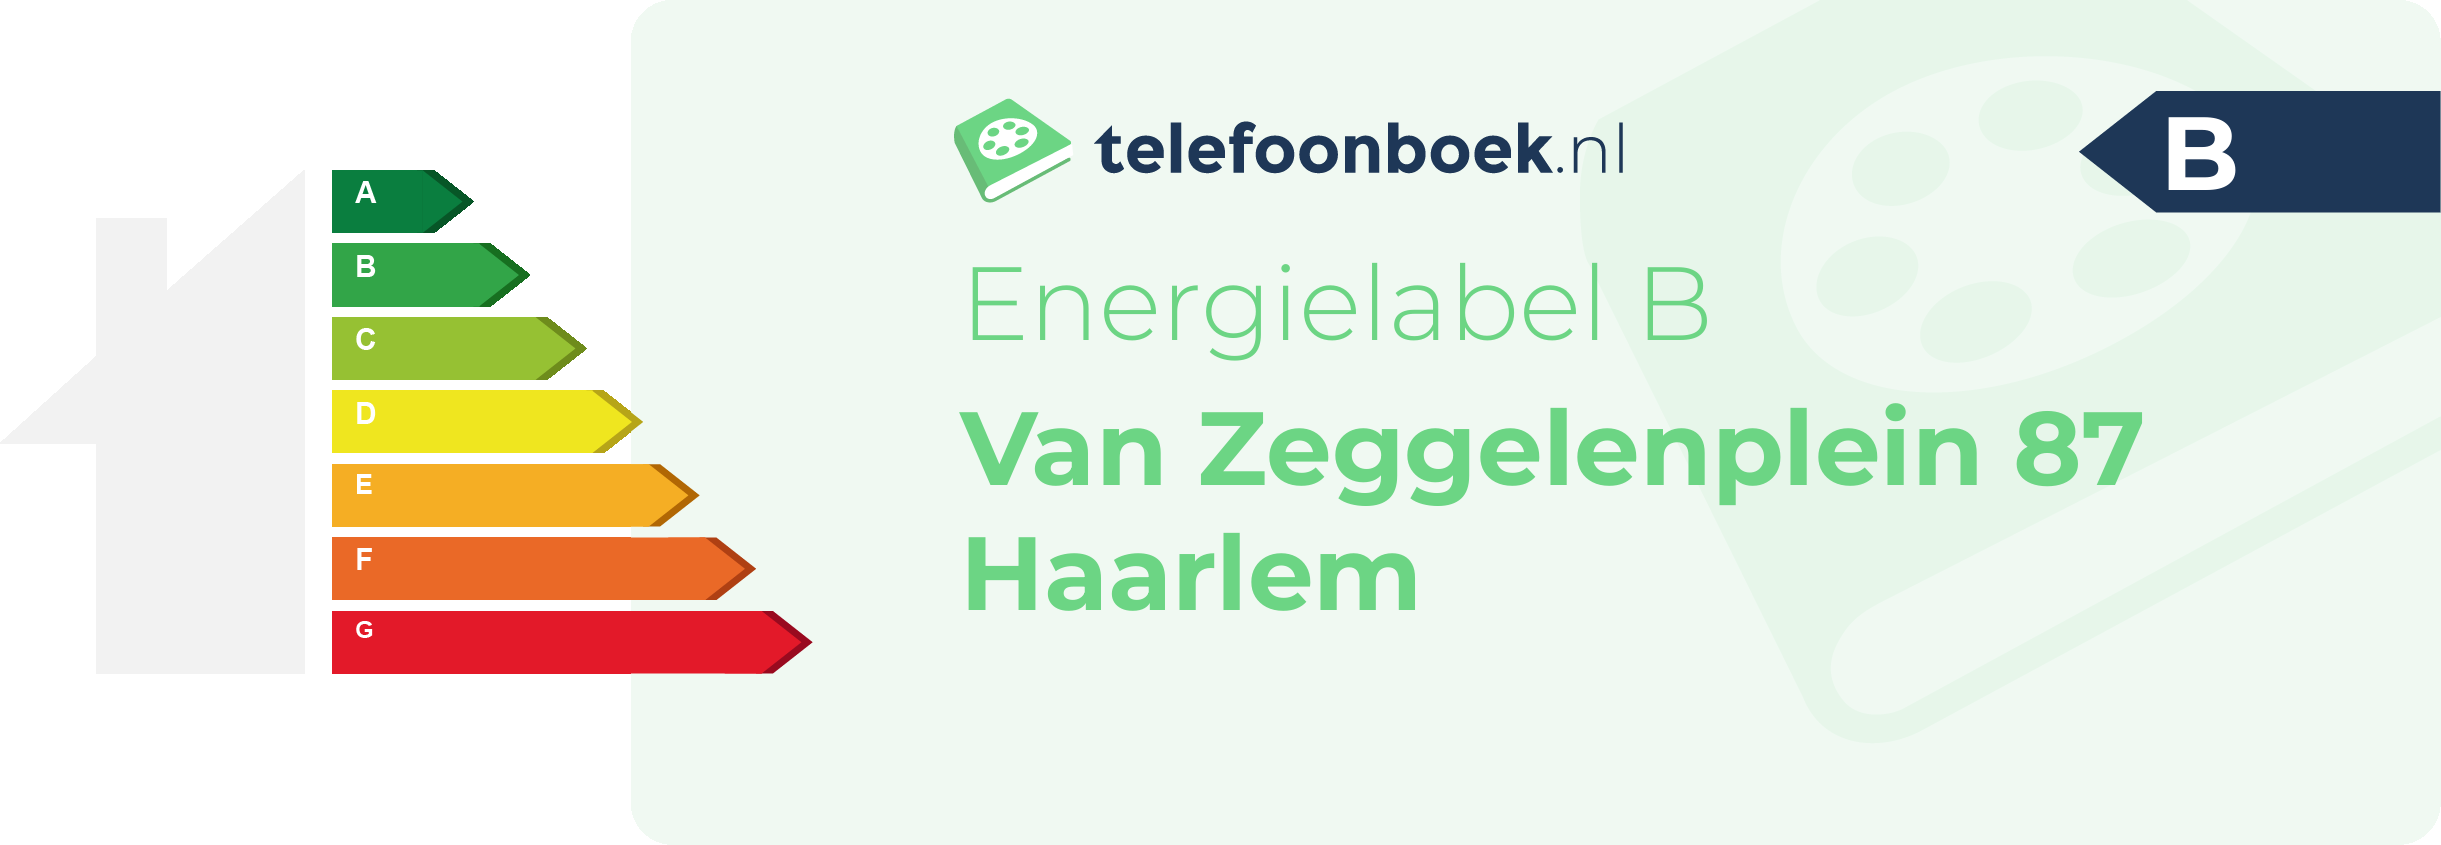 Energielabel Van Zeggelenplein 87 Haarlem